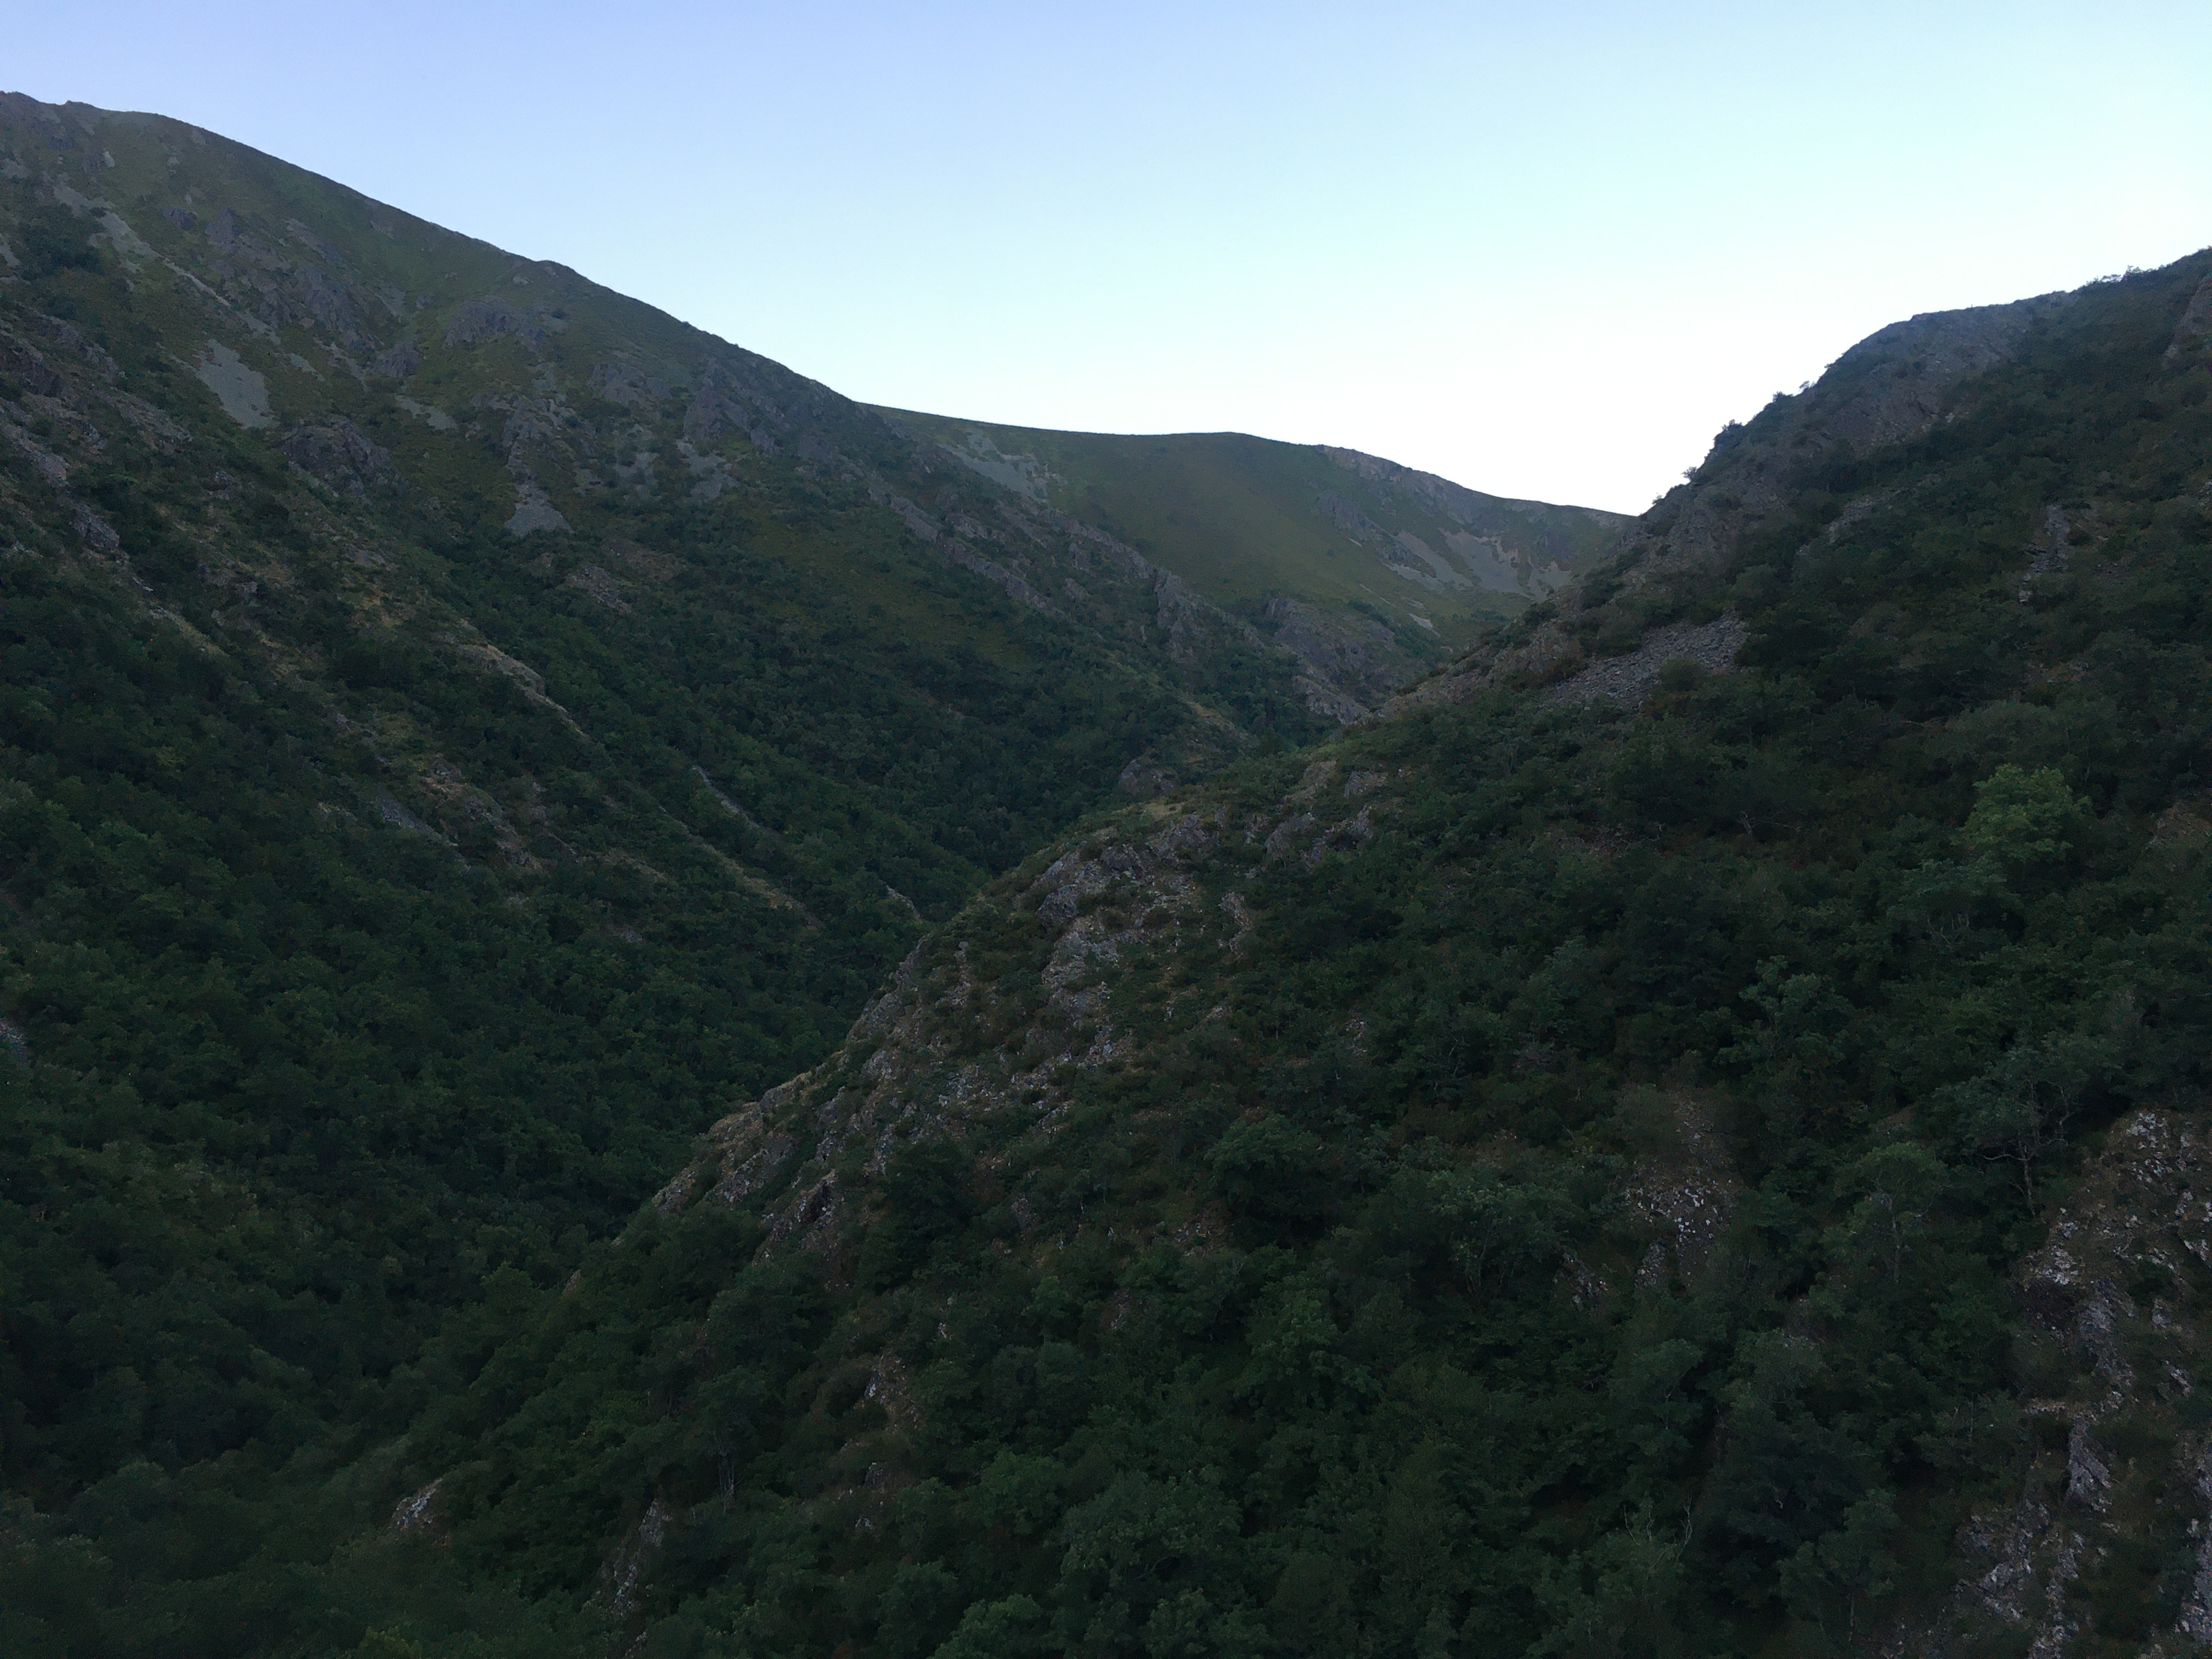 Curva de un valle muy cerrado. A la derecha, por delante, una ladera y por la izquierda la otra. Hacia abajo hay bastante vegetación, mientras que las cimas son más rocosas. Luz matutina.